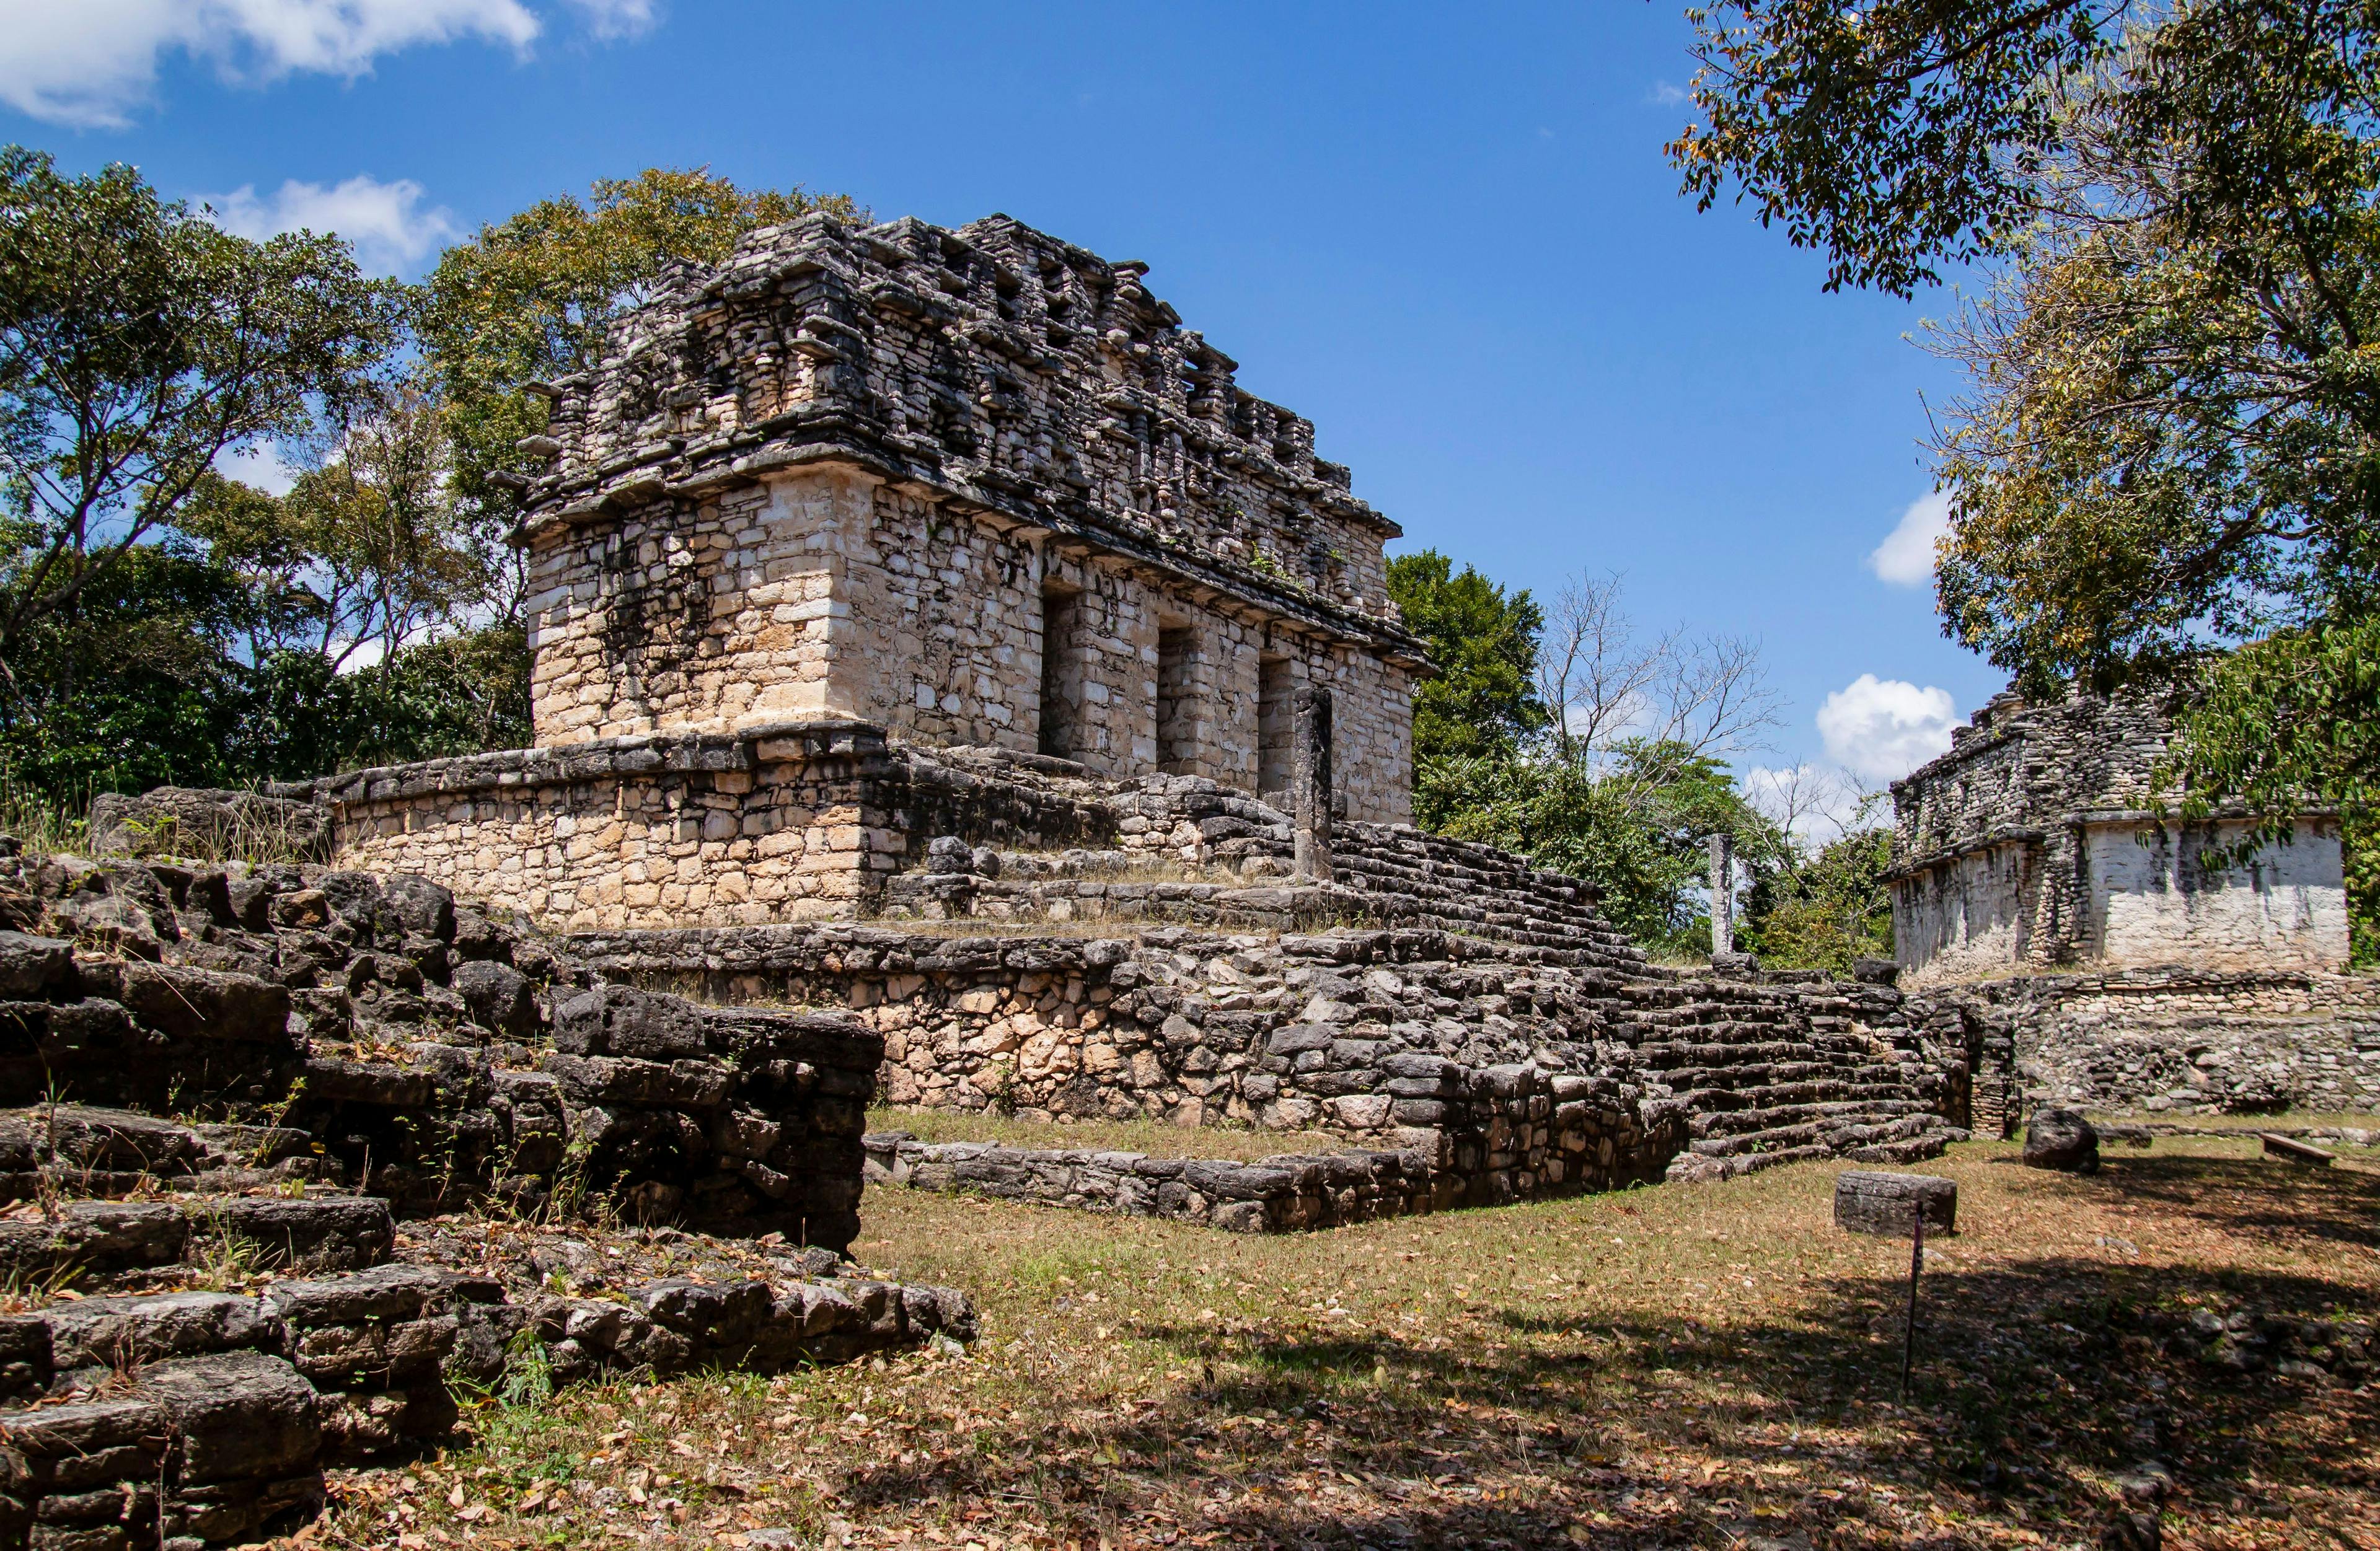 Yaxchilan ruins in Chiapas, Mexico